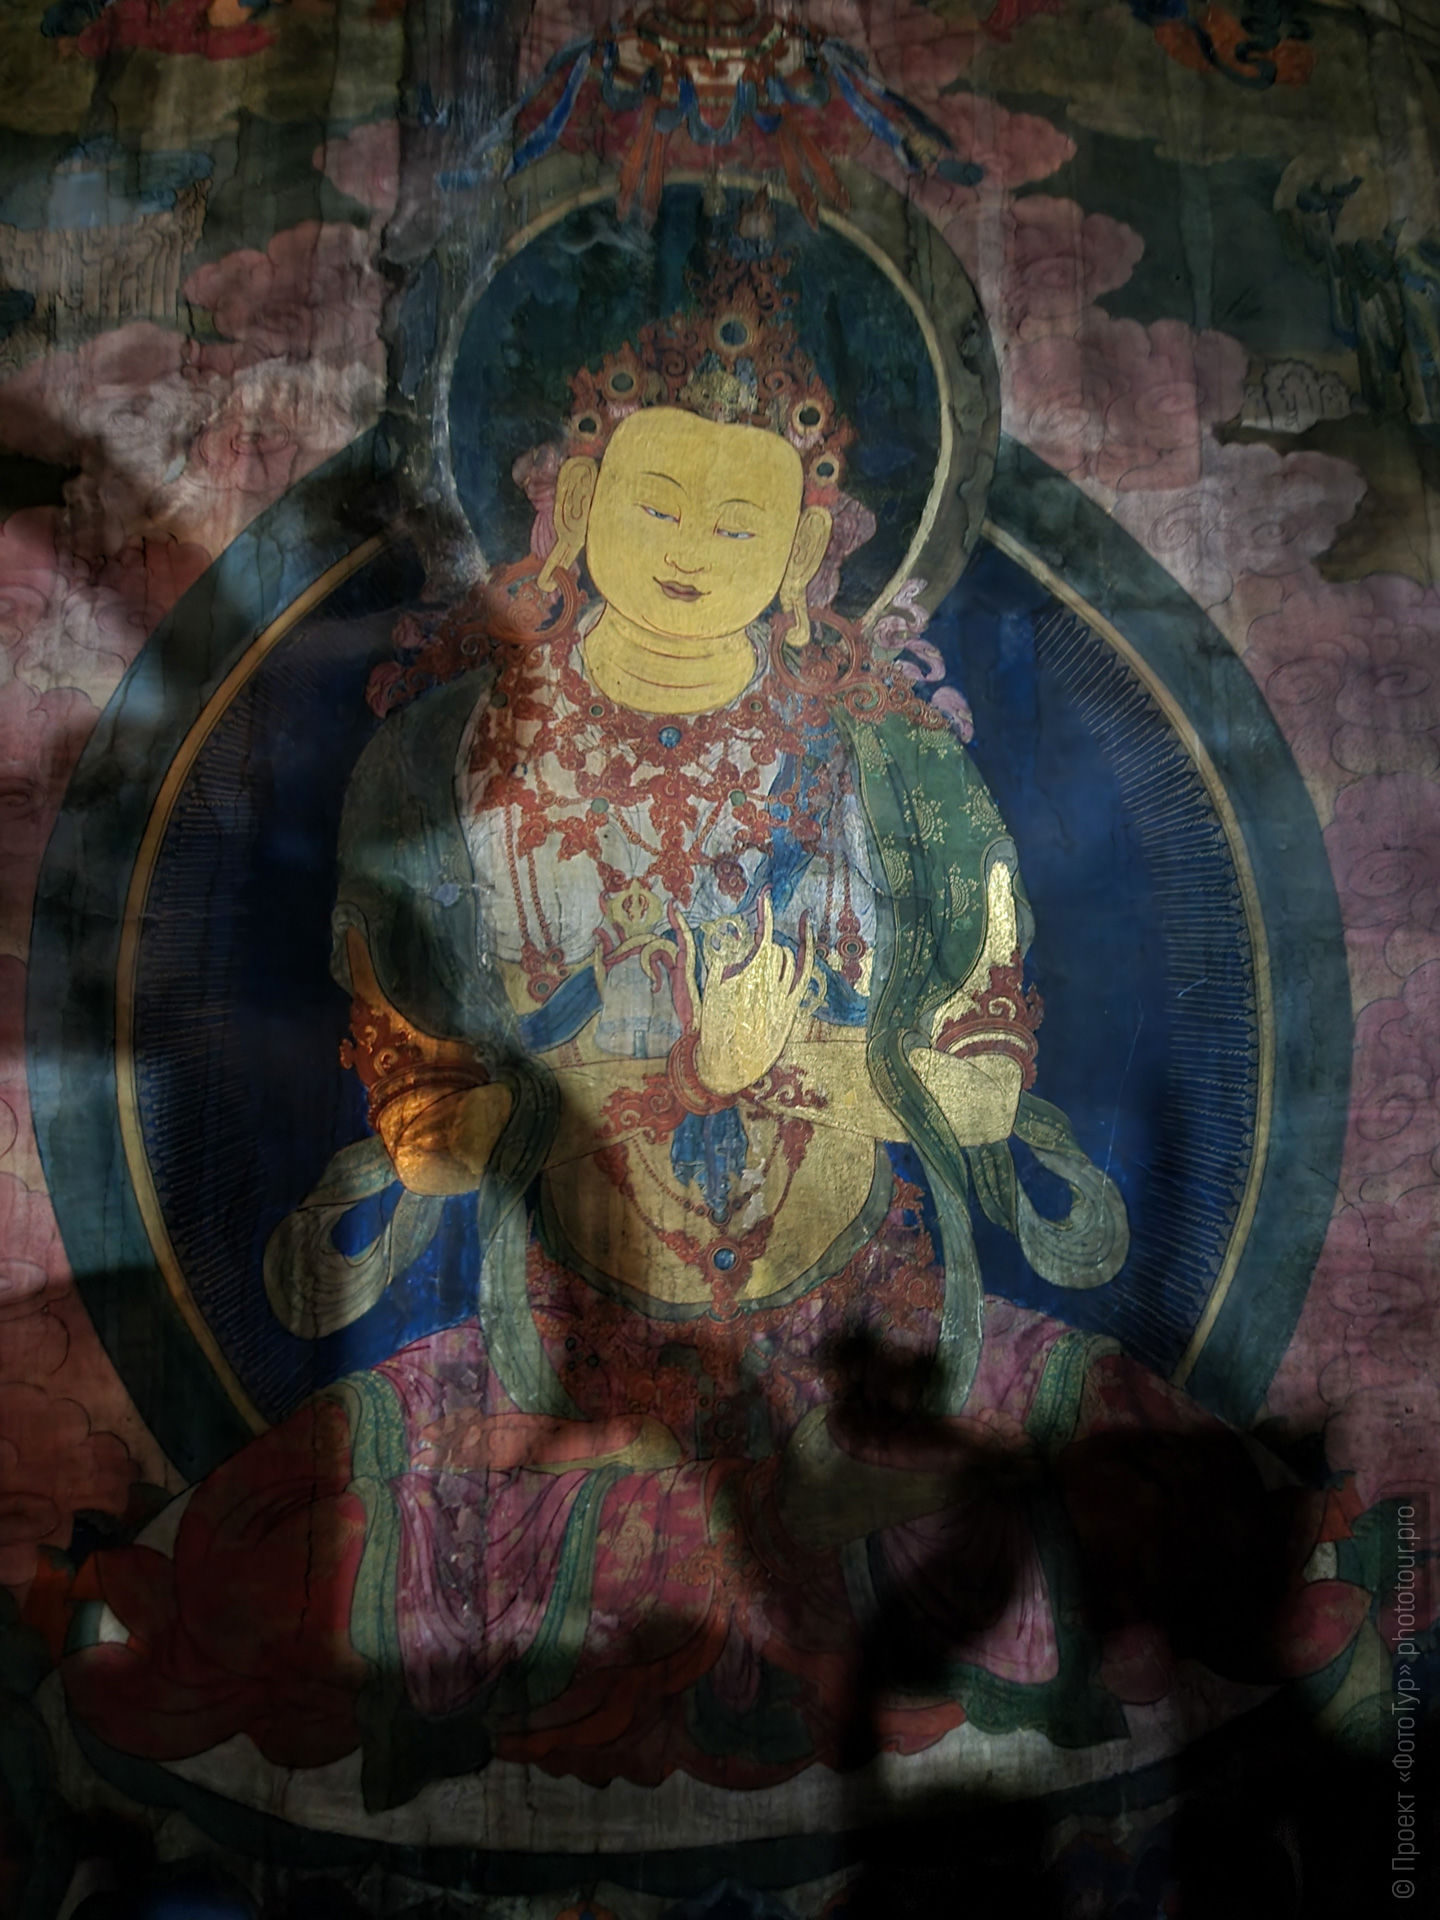 Фреска Будды Шакьмуни, буддийский монастырь Чамдей Гонпа, Ладакх, северная Индия.